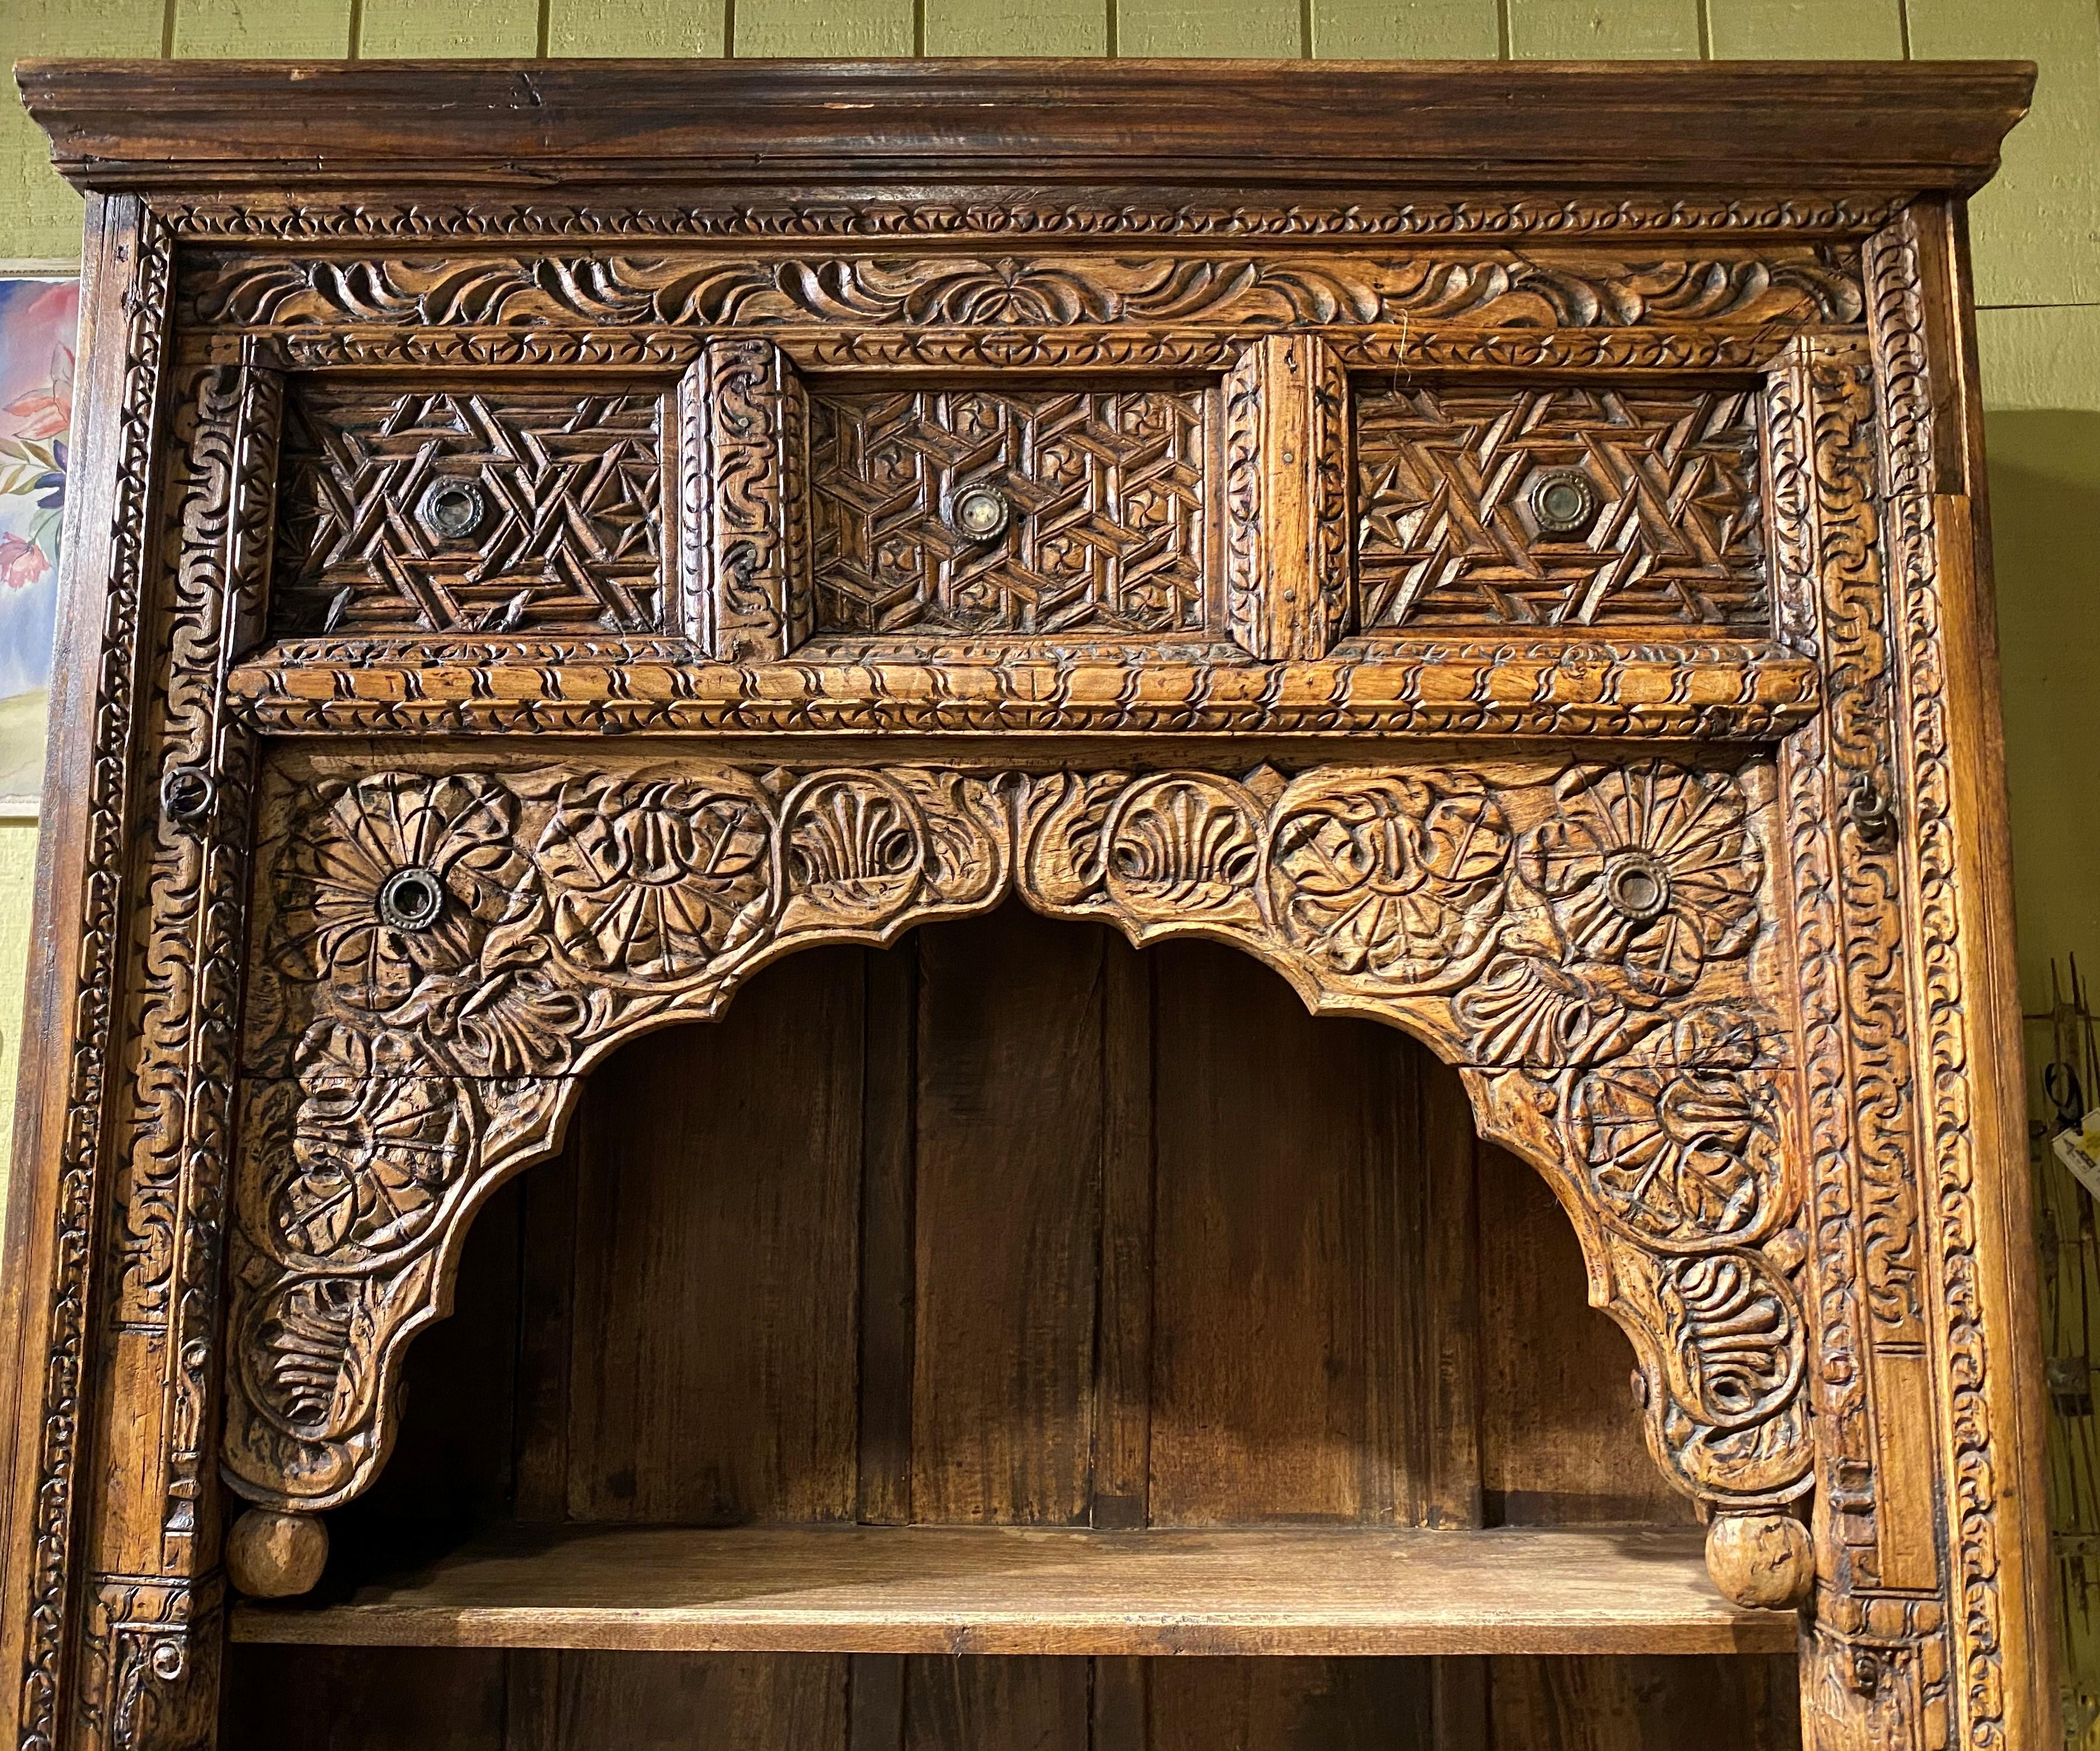 Ancienne porte indienne cintrée en bois sculpté datant de la fin du XIXe ou du début du XXe siècle, transformée en bibliothèque à trois étagères, avec une corniche moulurée et des panneaux supérieurs sculptés ornés d'une décoration en métal. Très